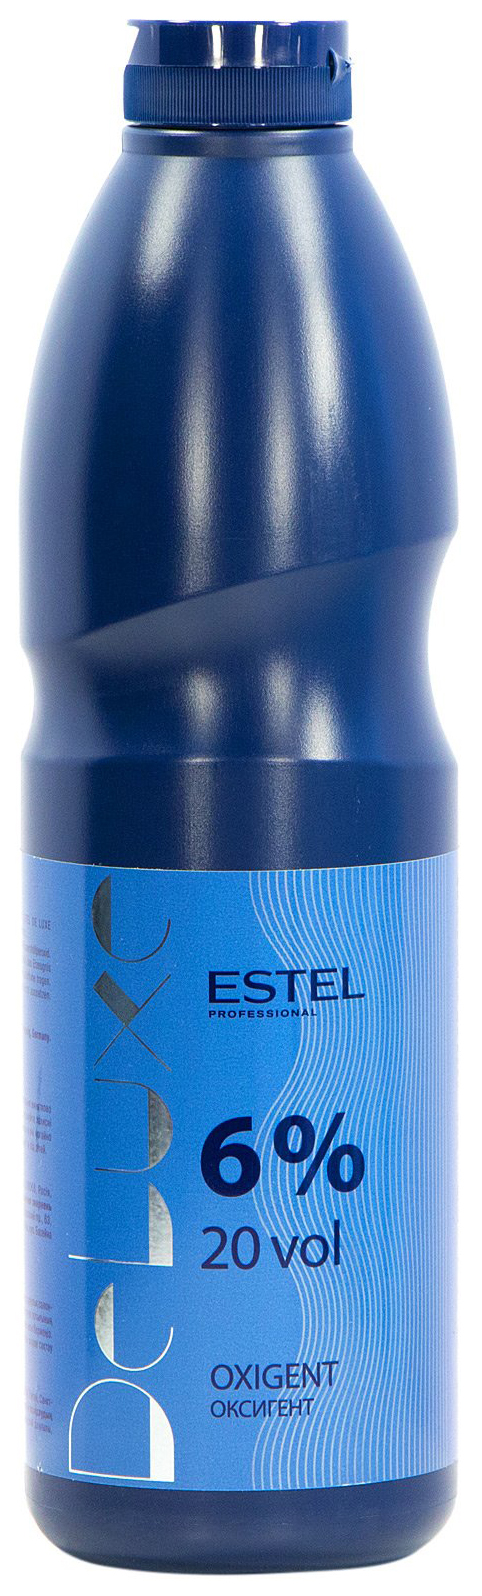 Проявитель Estel Professional De Luxe Oxigent 6% 900 мл t lab professional premier noir крем проявитель окислитель 9% 30vol 1000 мл